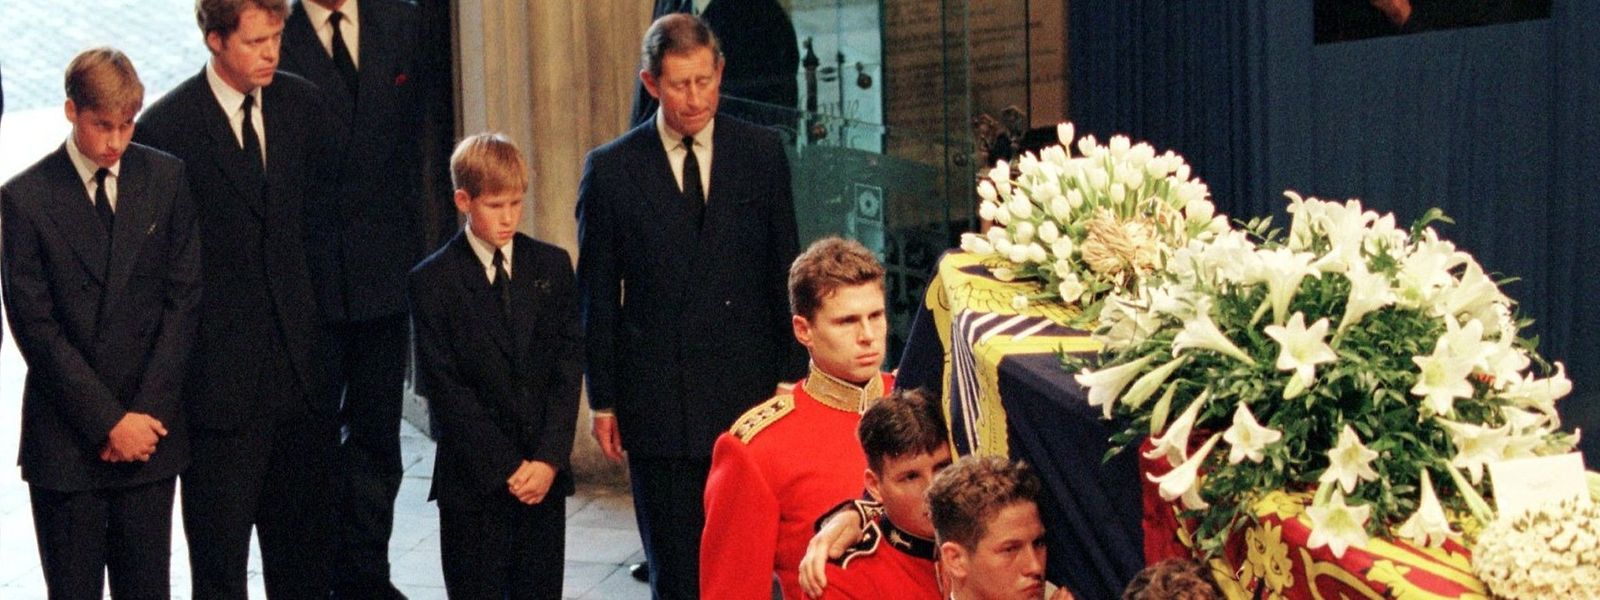 Prinz William (l-r), Dianas Bruder Charles Spencer, Prinz Harry und Prinz Charles stehen hinter dem Sarg von Prinzessin Diana auf dem Weg zur Trauerfeier in der Londoner Westminster Abtei.